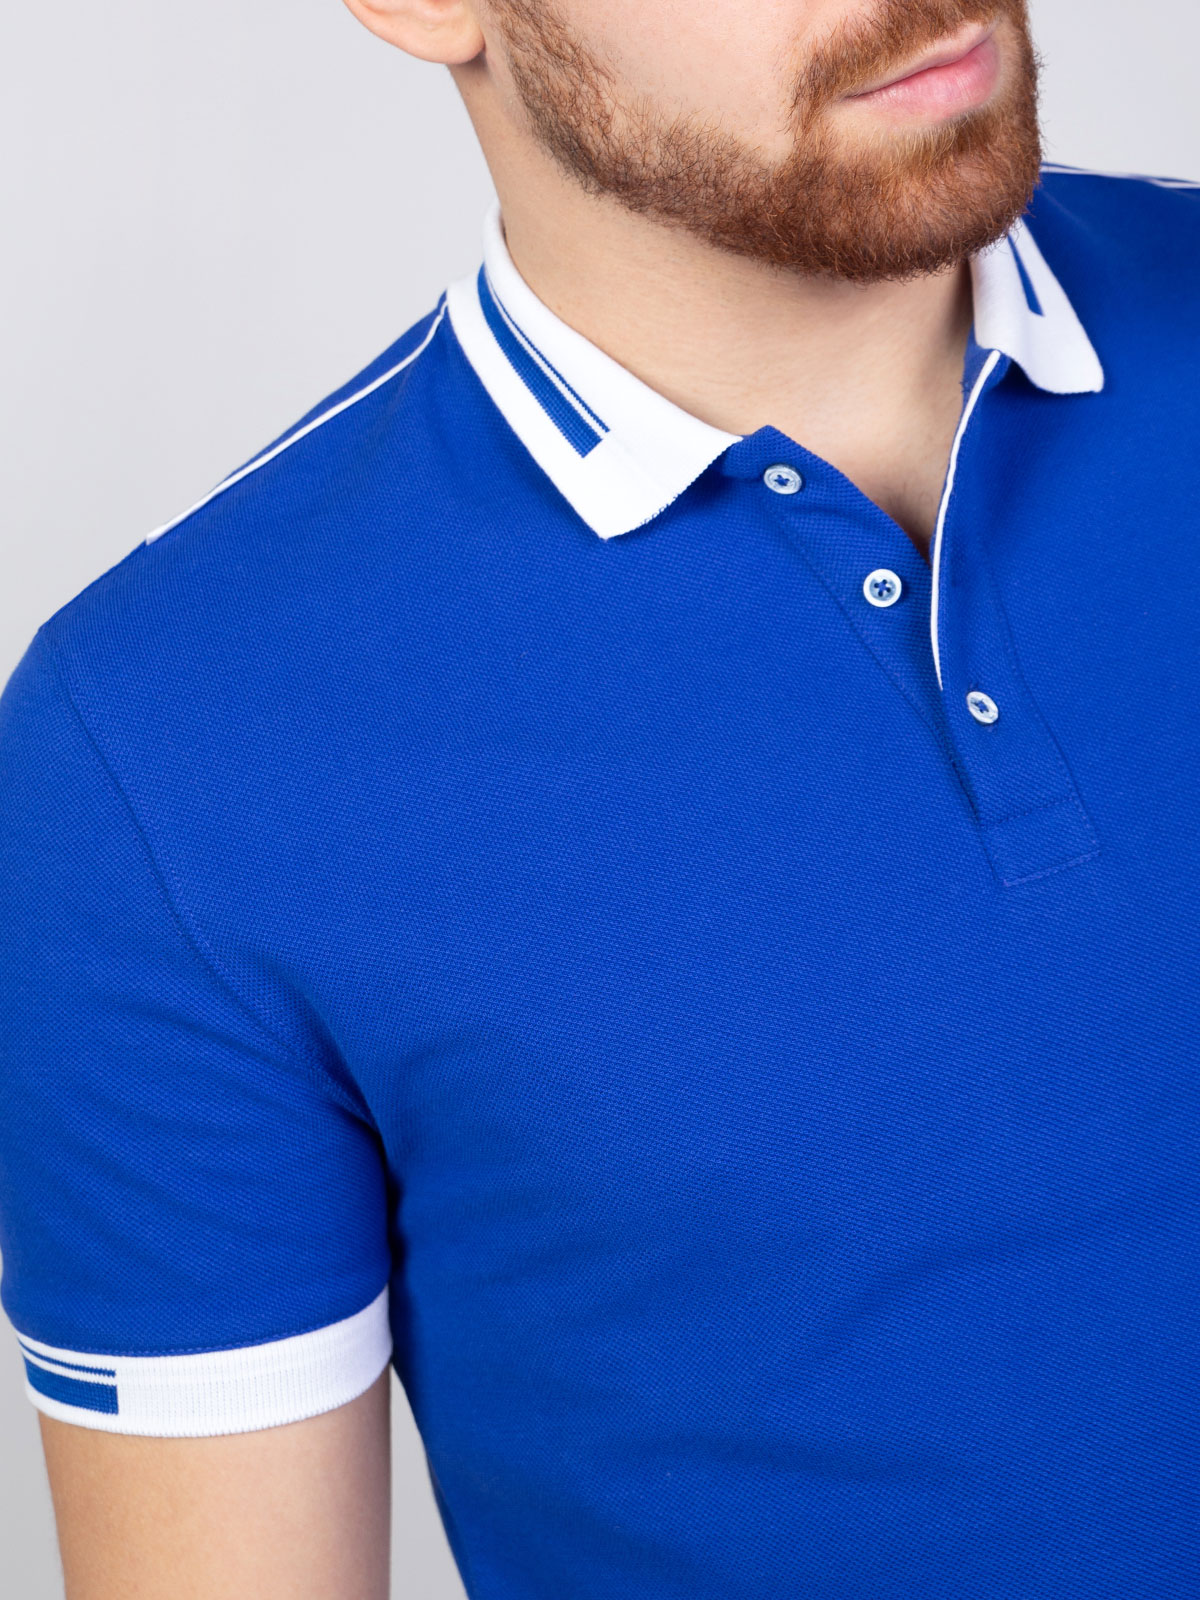 Bluză în albastru regal cu guler în alb - 93398 € 20.25 img3